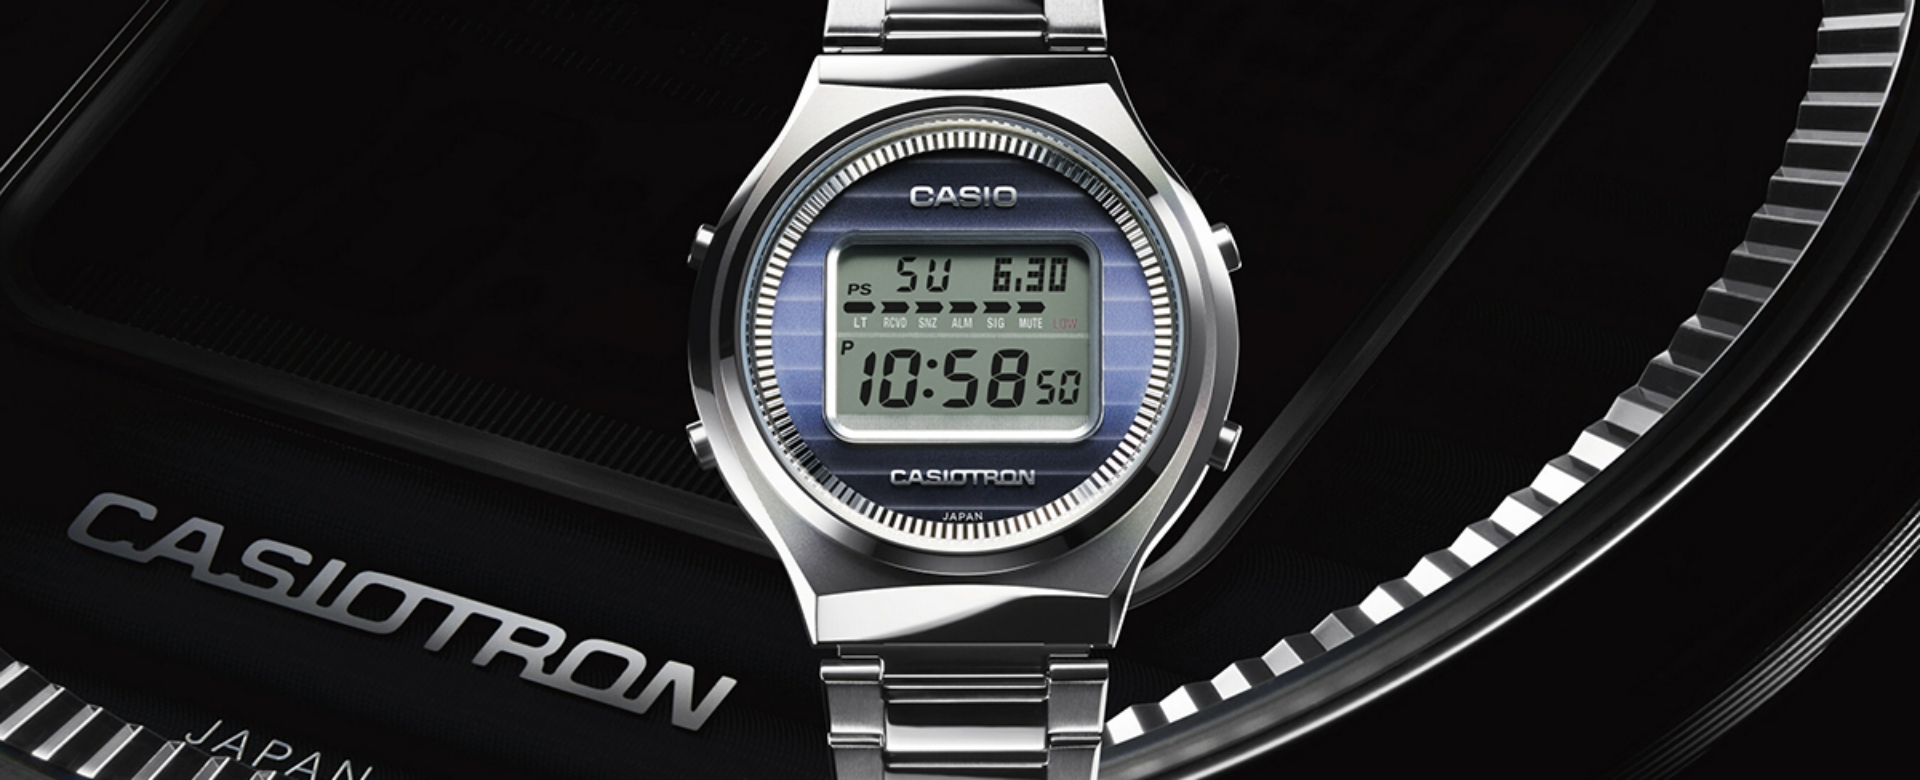 Casio đánh dấu 50 năm chế tác đồng hồ với phiên bản giới hạn mang tên Casiotron